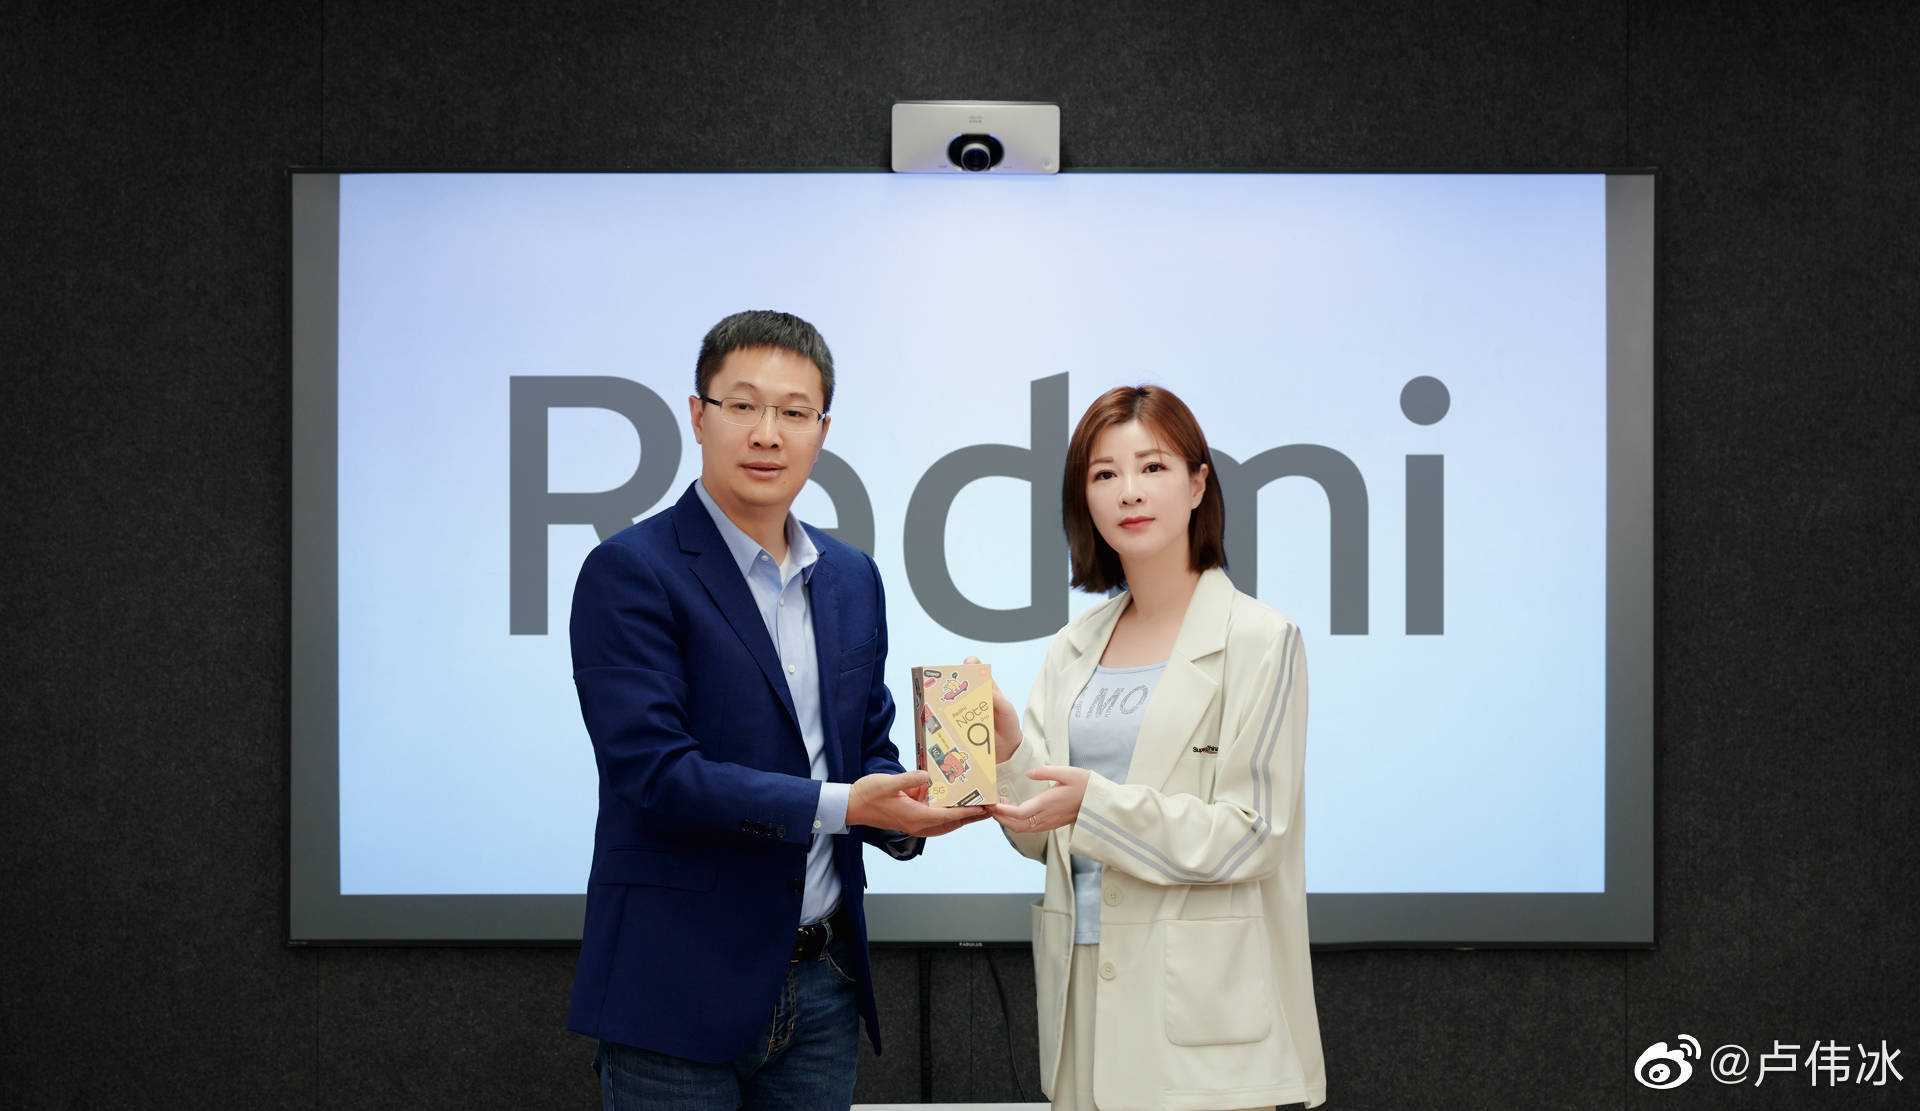 топ-менеджер Redmi и Ду Хуа, генеральный директор Lehua Entertainment